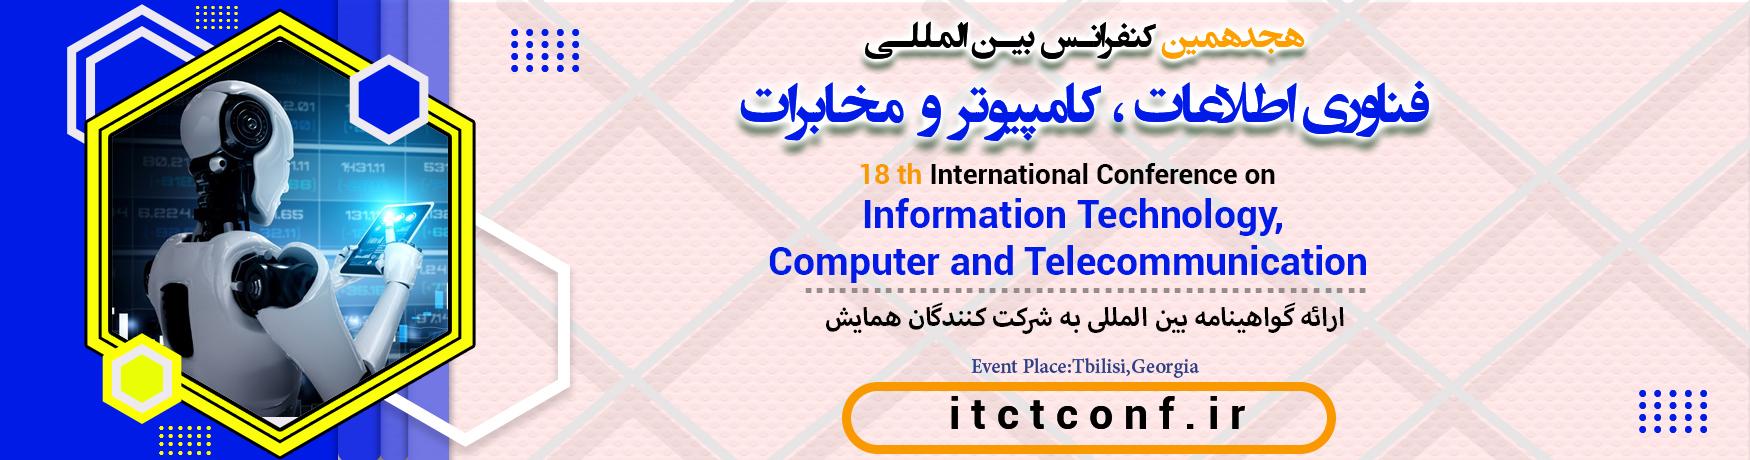 کنفرانس بین المللی فناوری اطلاعات ، کامپیوتر و مخابرات	